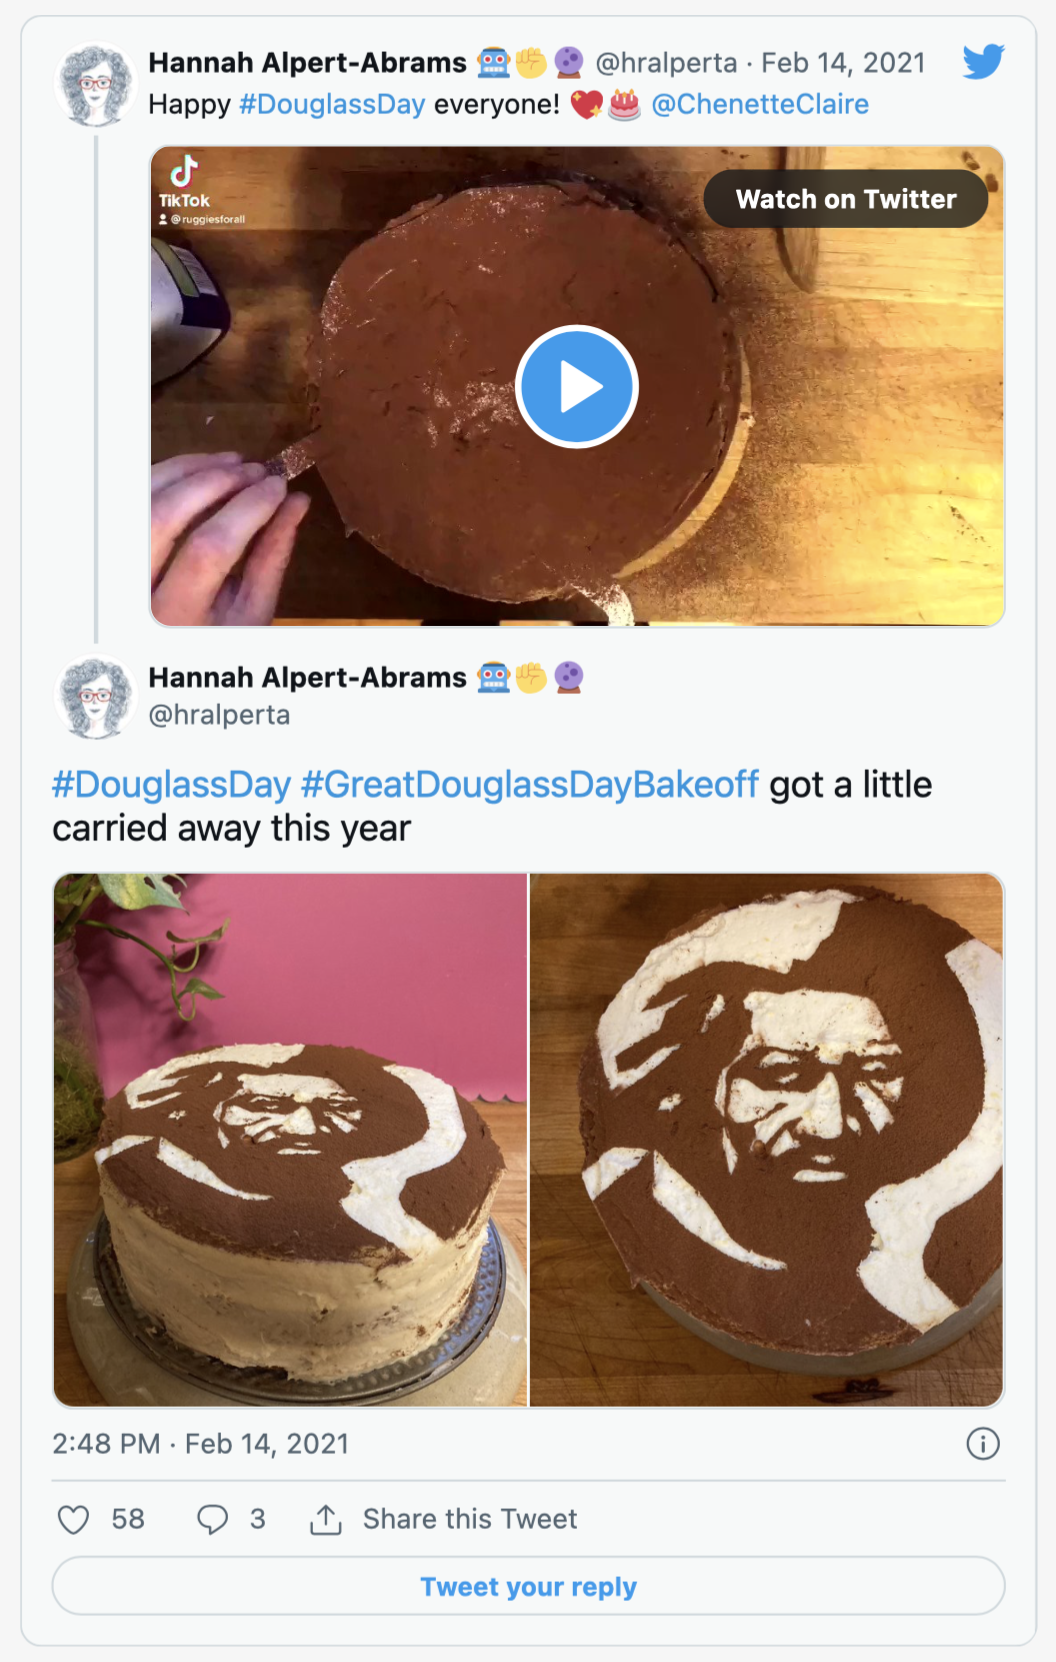 screenshot of tweet from Hannah Alpert-Abrams